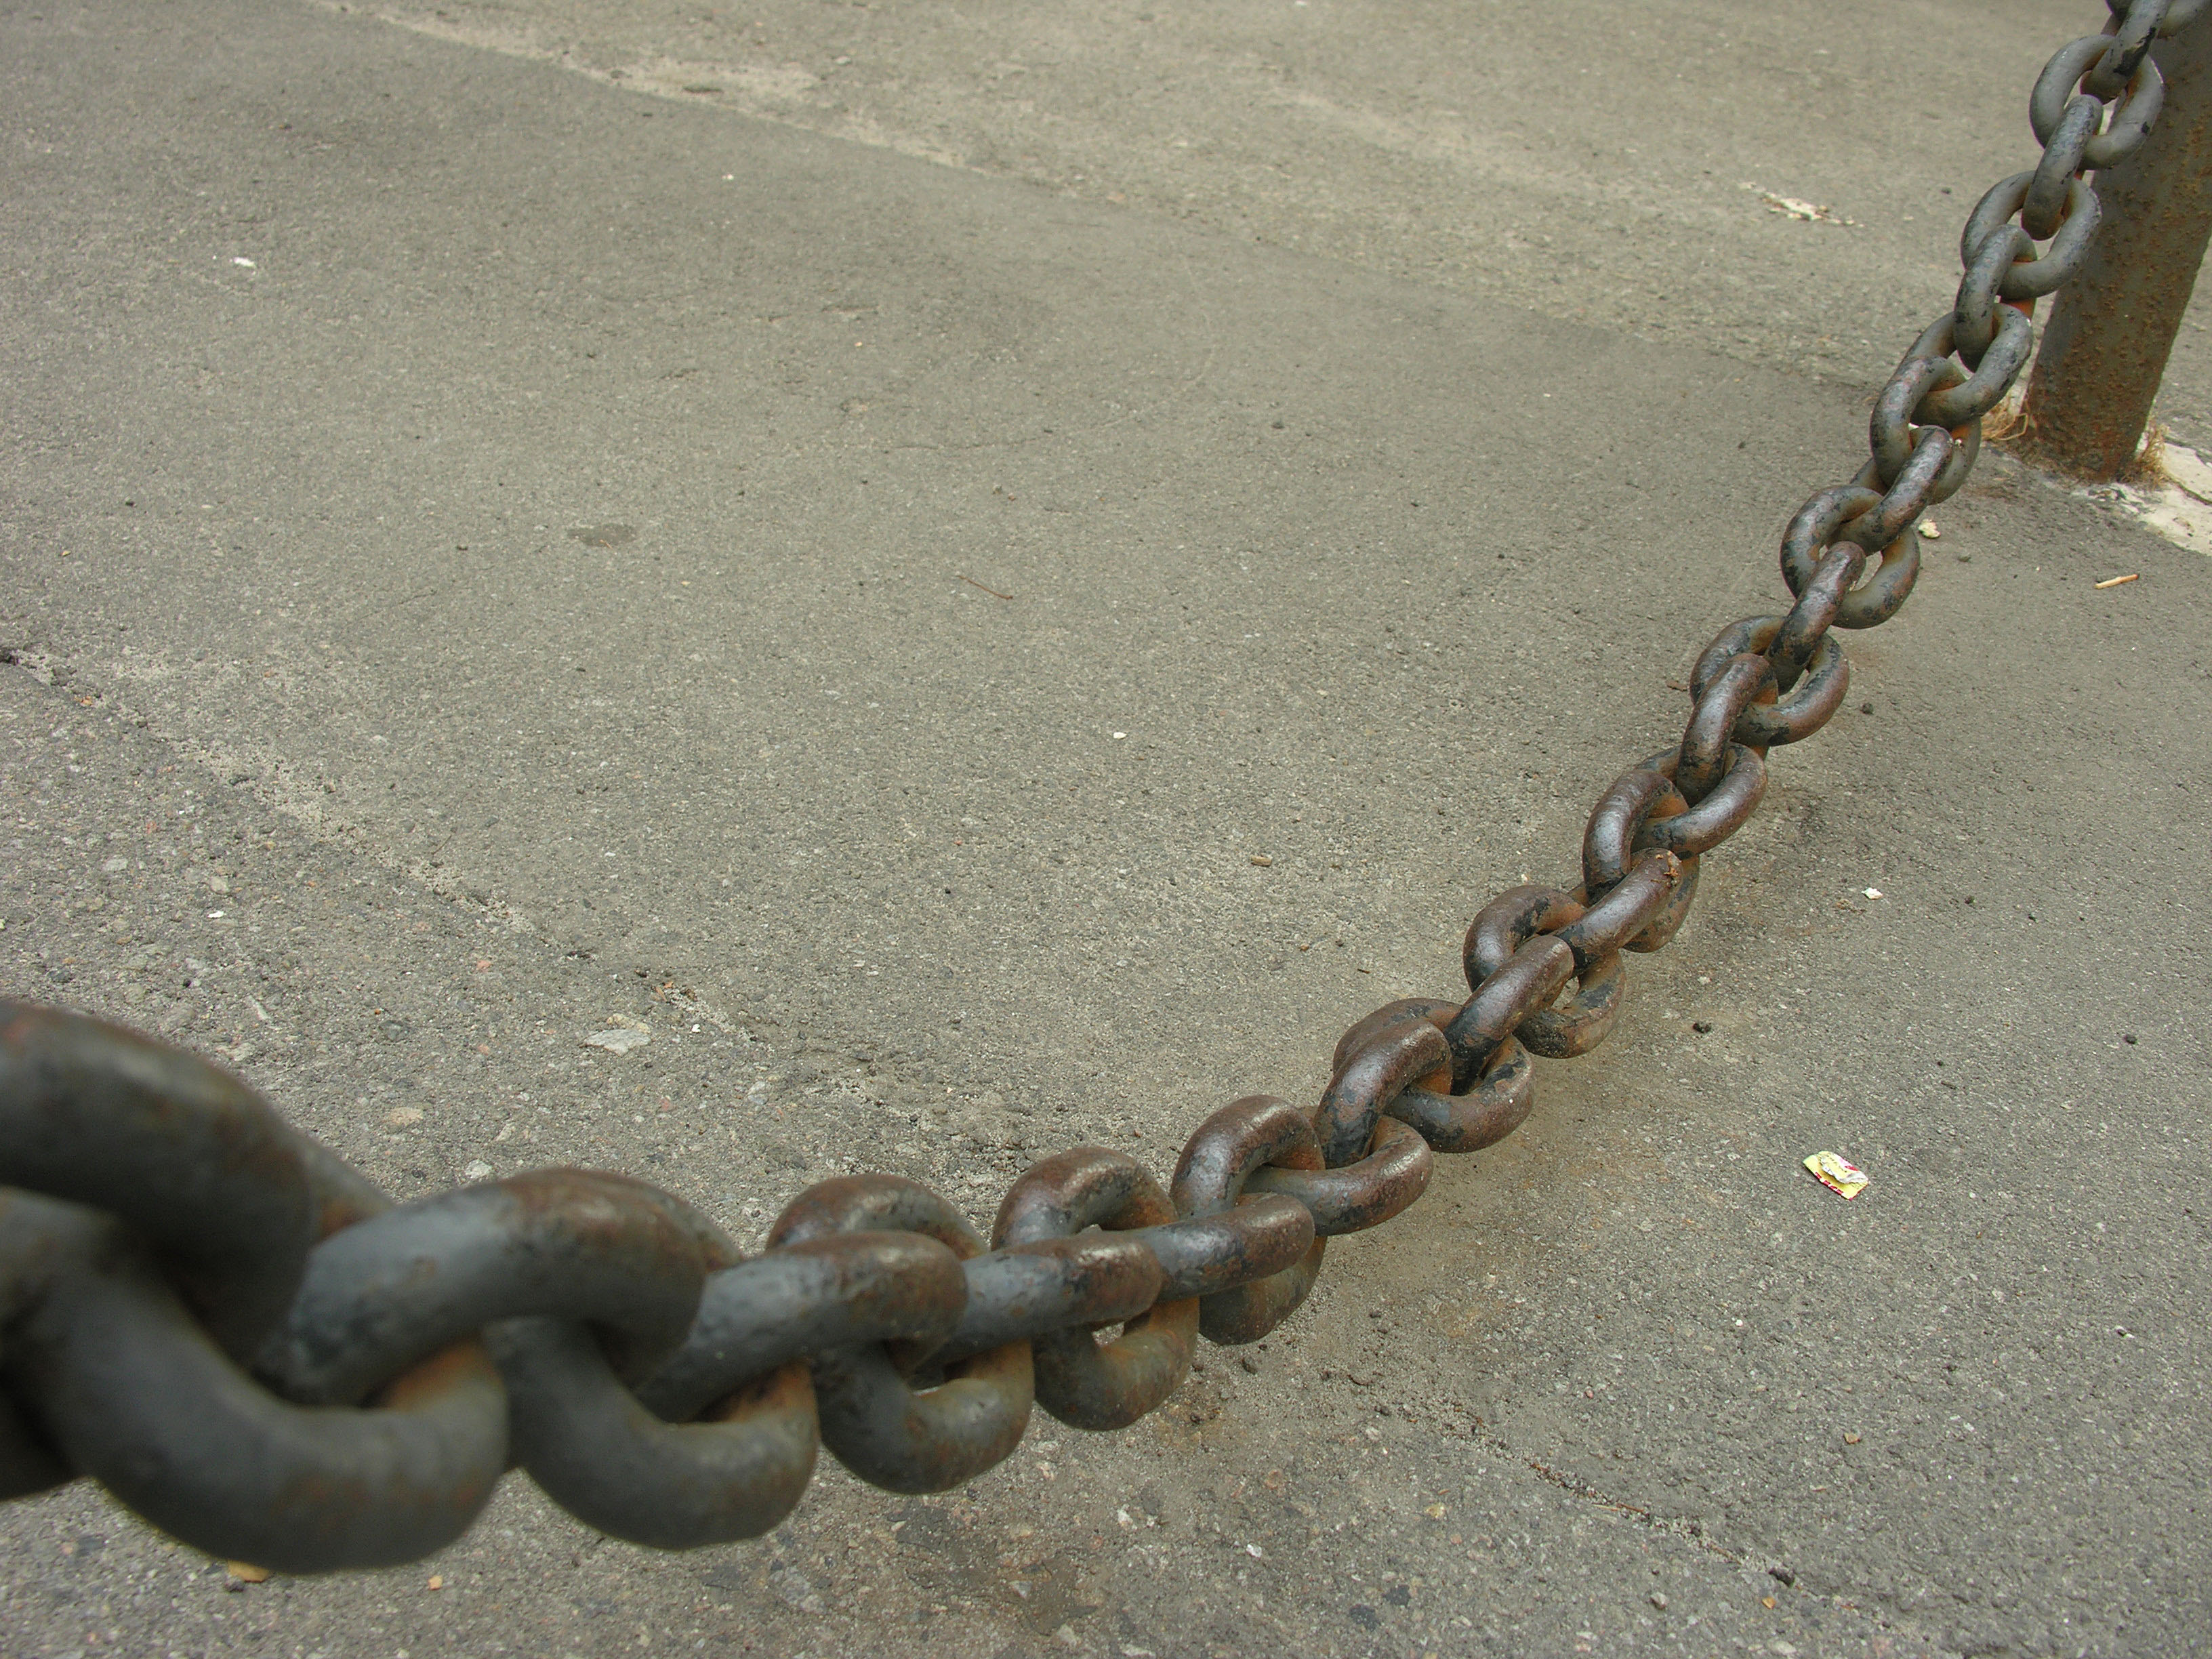 Chain 12